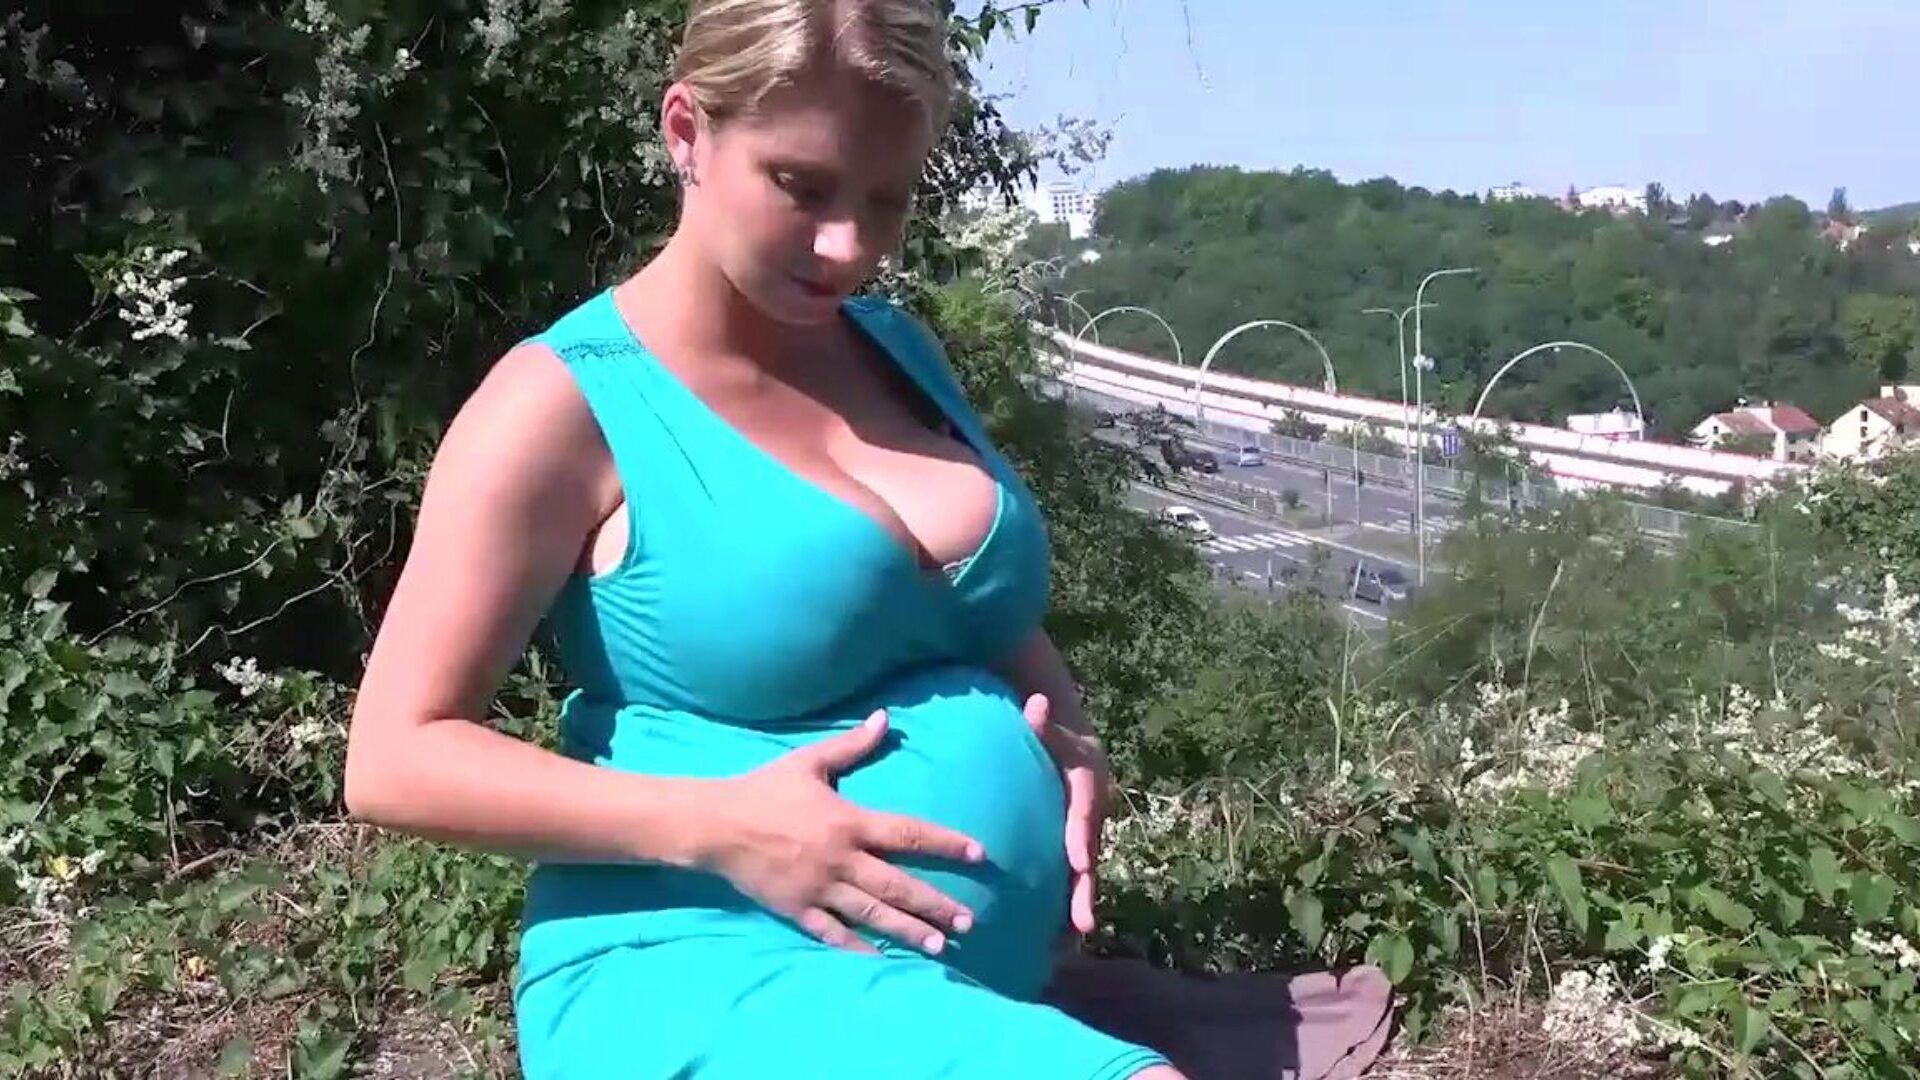 Katerina Hartlova wychodzi na zewnątrz, aby cieszyć się swoim ciałem w ciąży